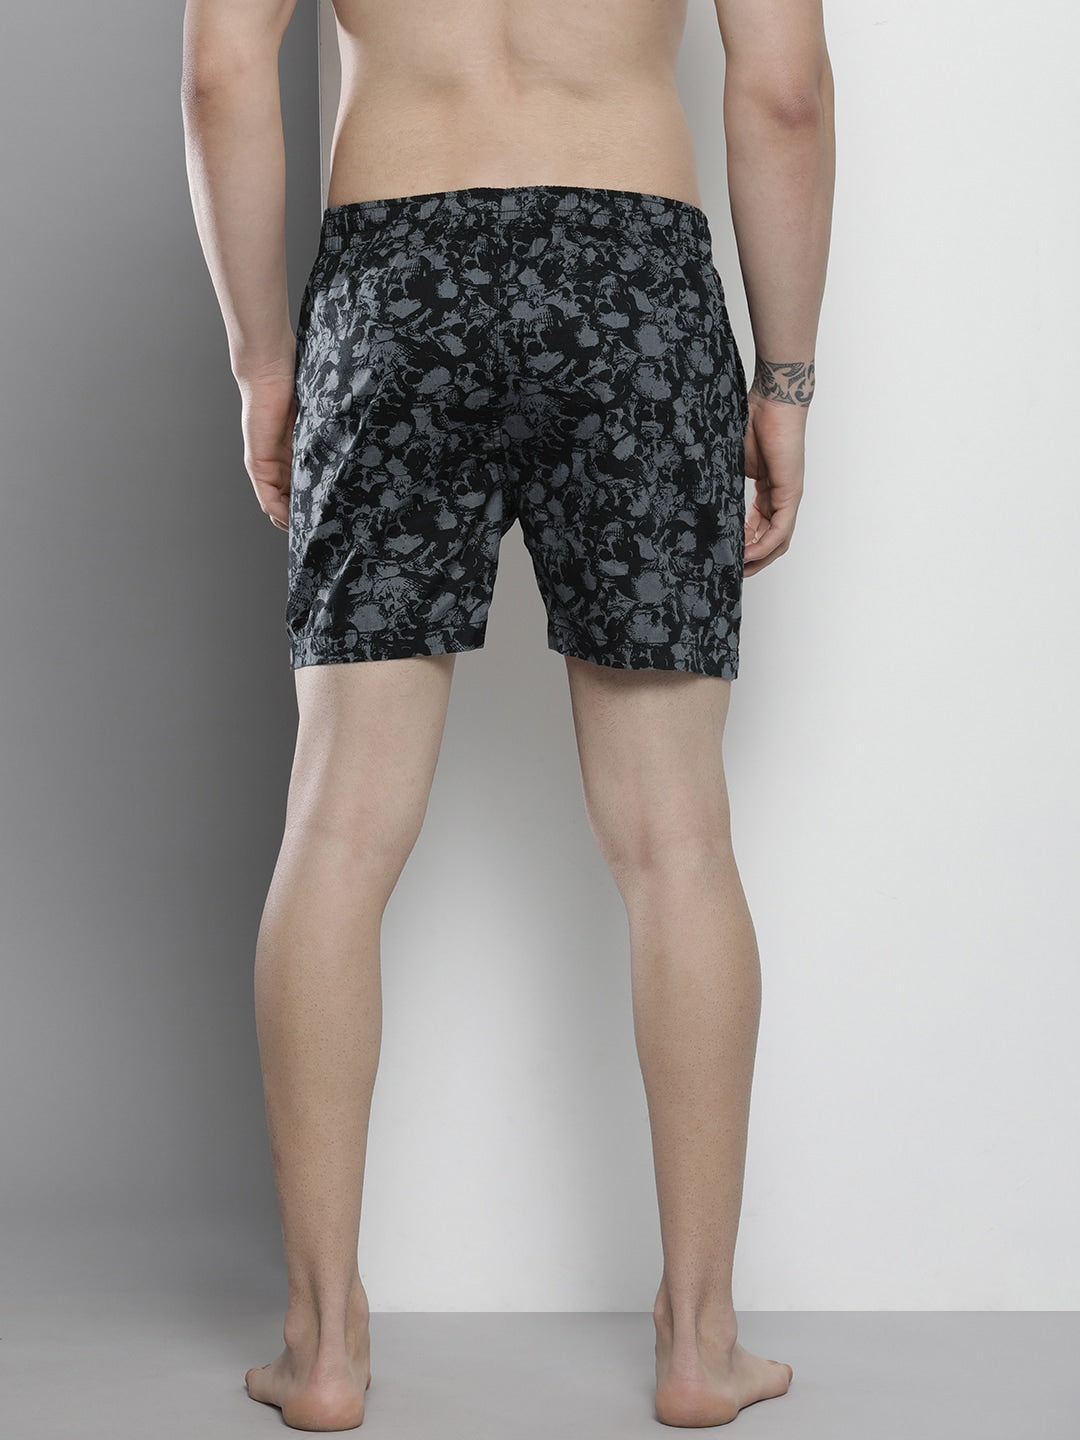 Shop Men Boxer Shorts Online.